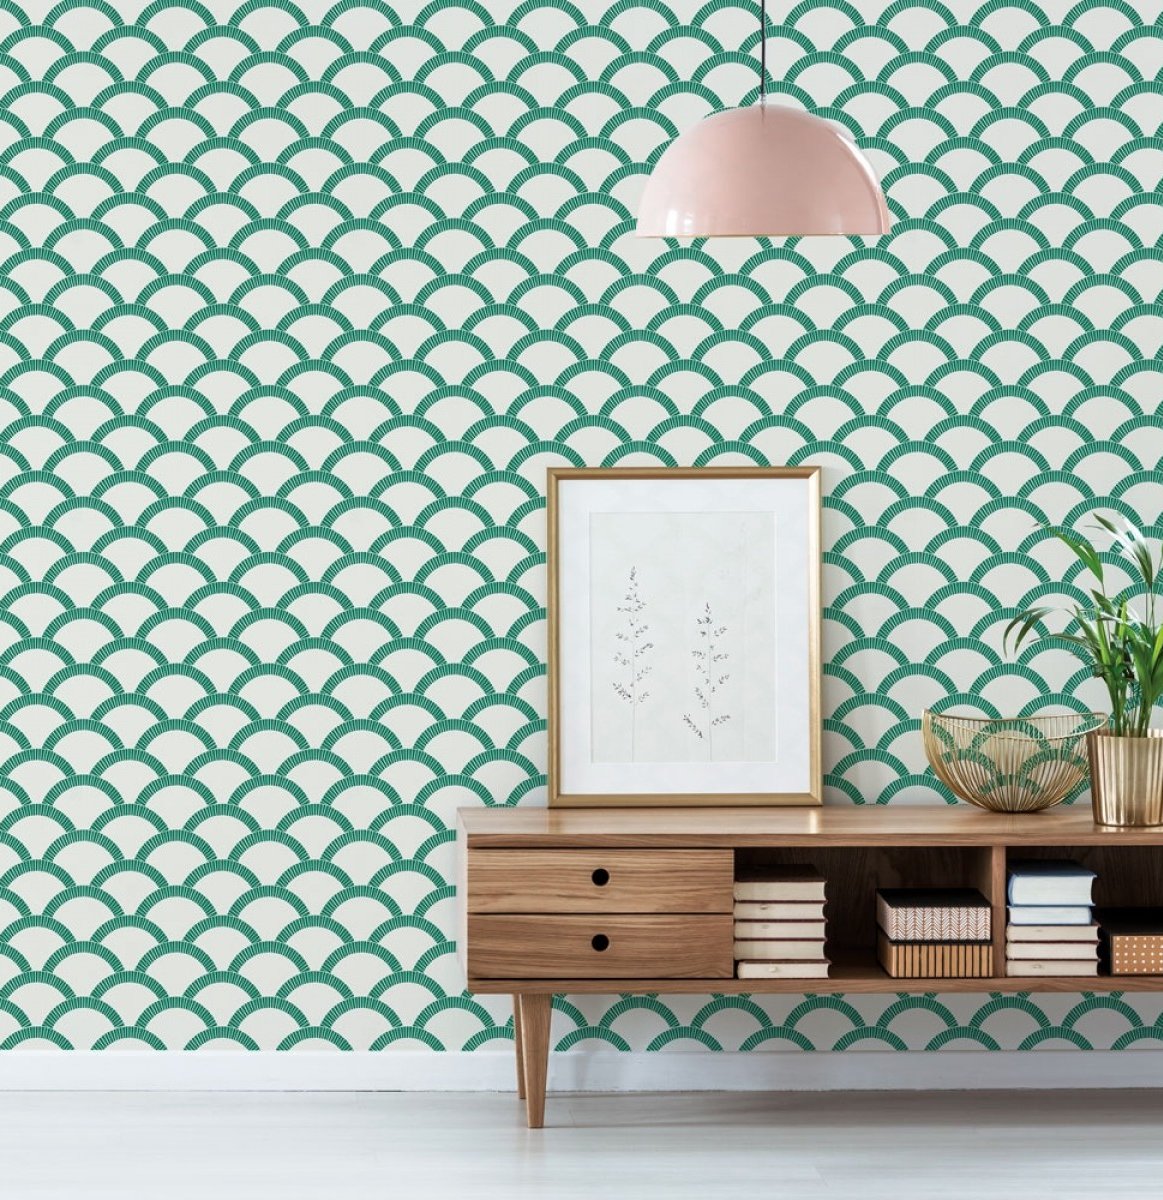 conceptions de papier peint modernes pour le salon,vert,fond d'écran,mur,chambre,meubles